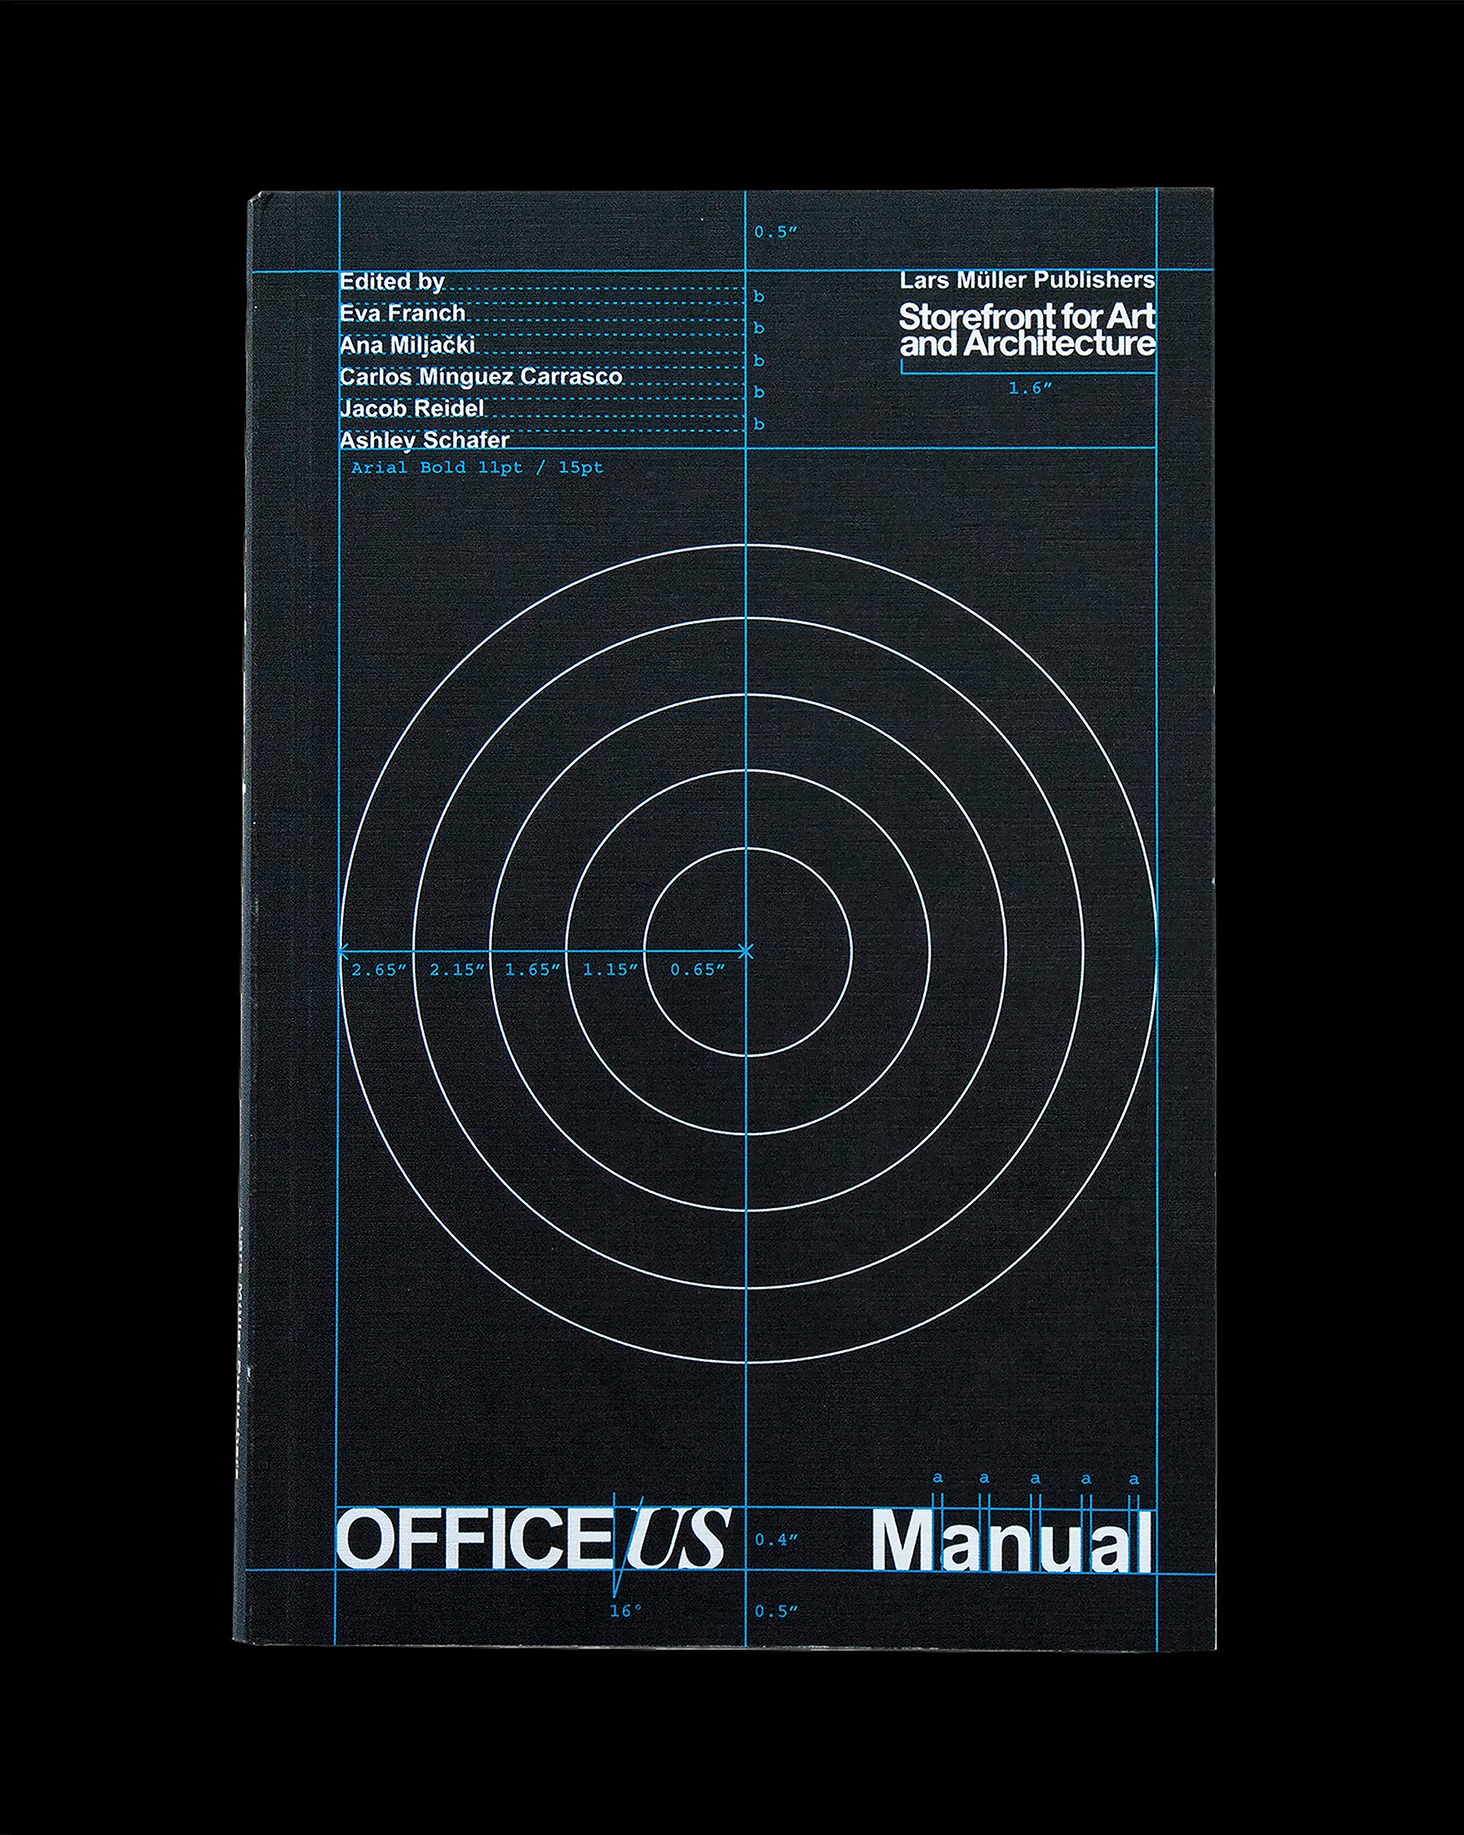 Book designed by Pentagram's Natasha Jen for OfficeUS Manual published by Lars Müller Publishers